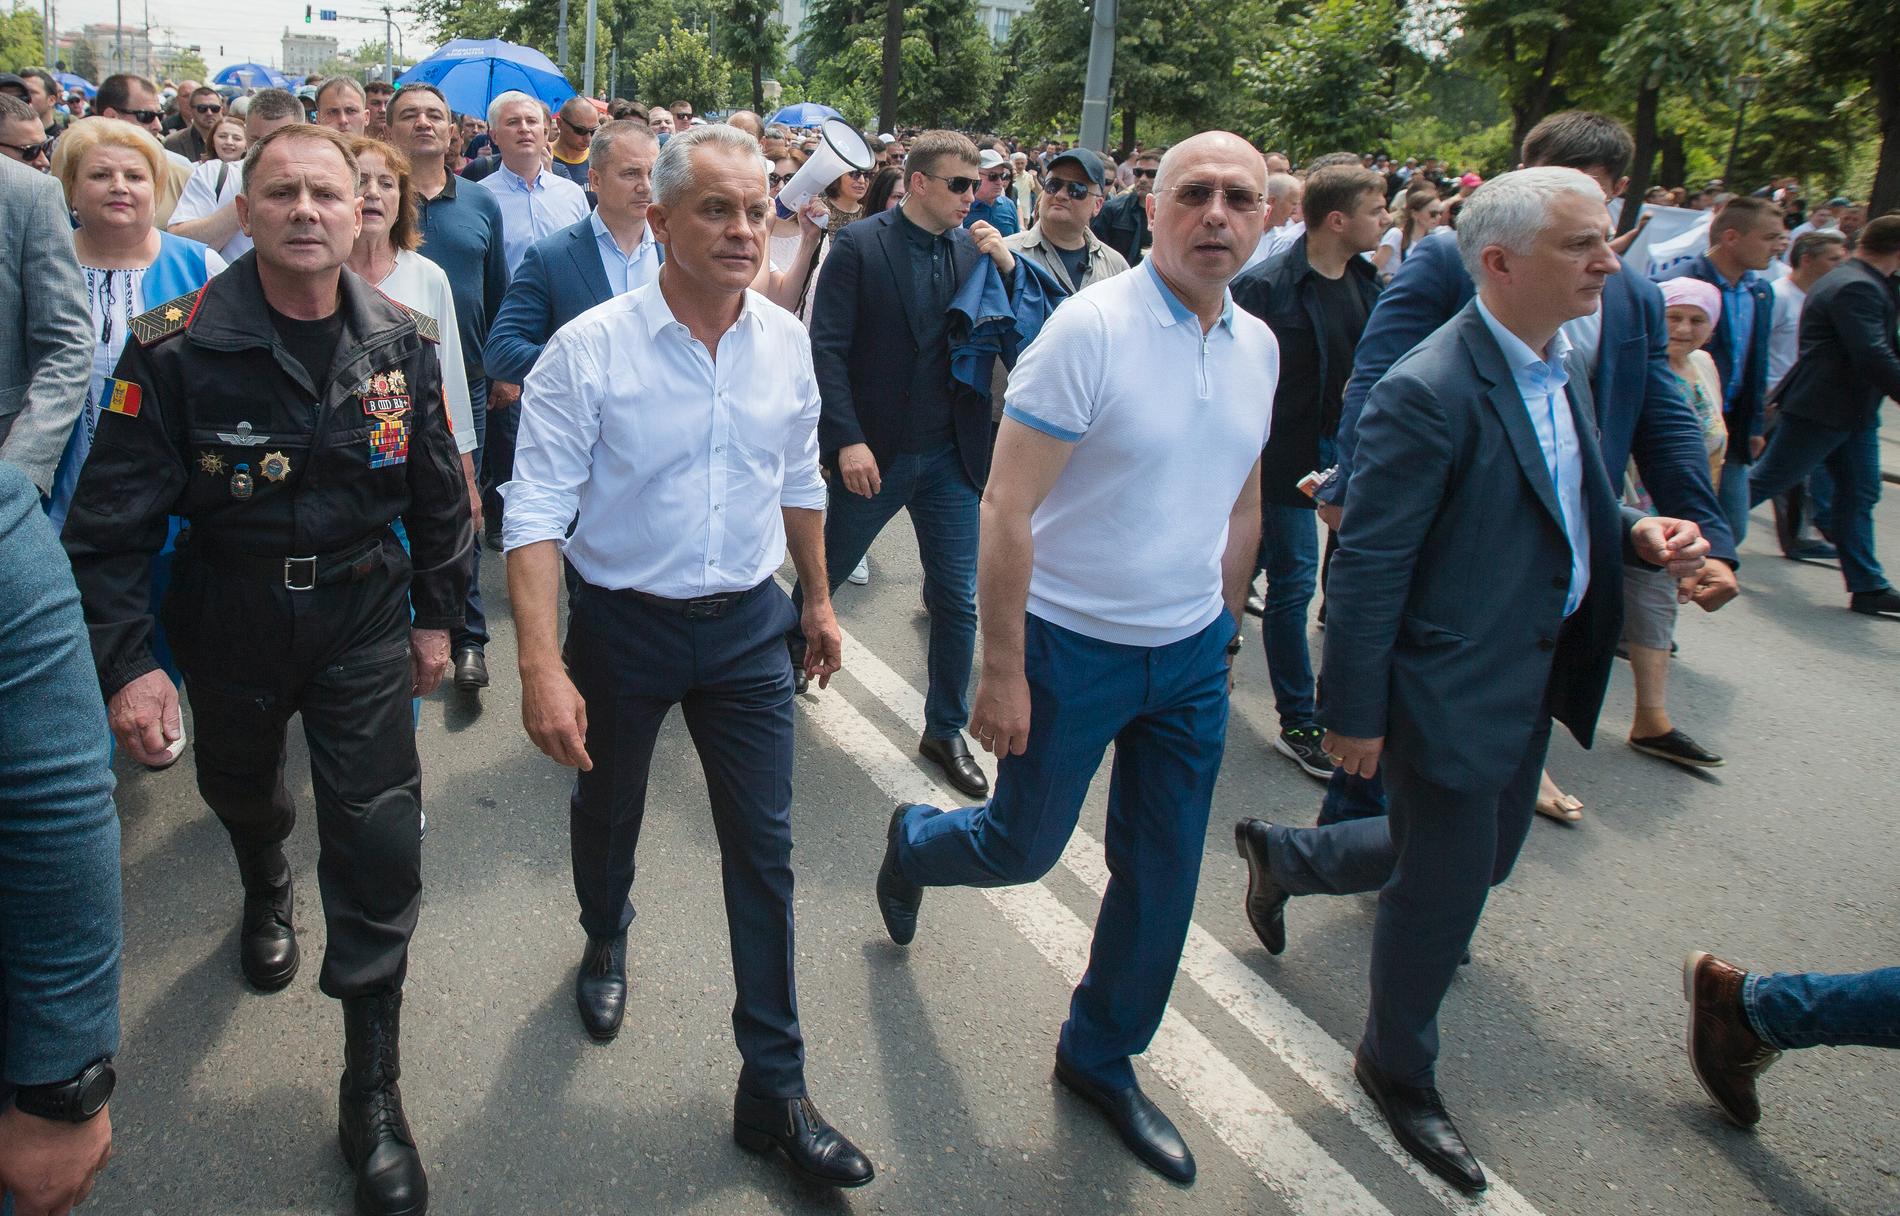 Demokratiska partiets ledare Vladimir Plahotniuc, som är Moldaviens de facto ledare, marscherade med premiärminister Pavel Filip i Chisinau för några dagar sedan. Nu väljer partiet att lämna ifrån sig makten. Bilden är tagen den 9 juni.